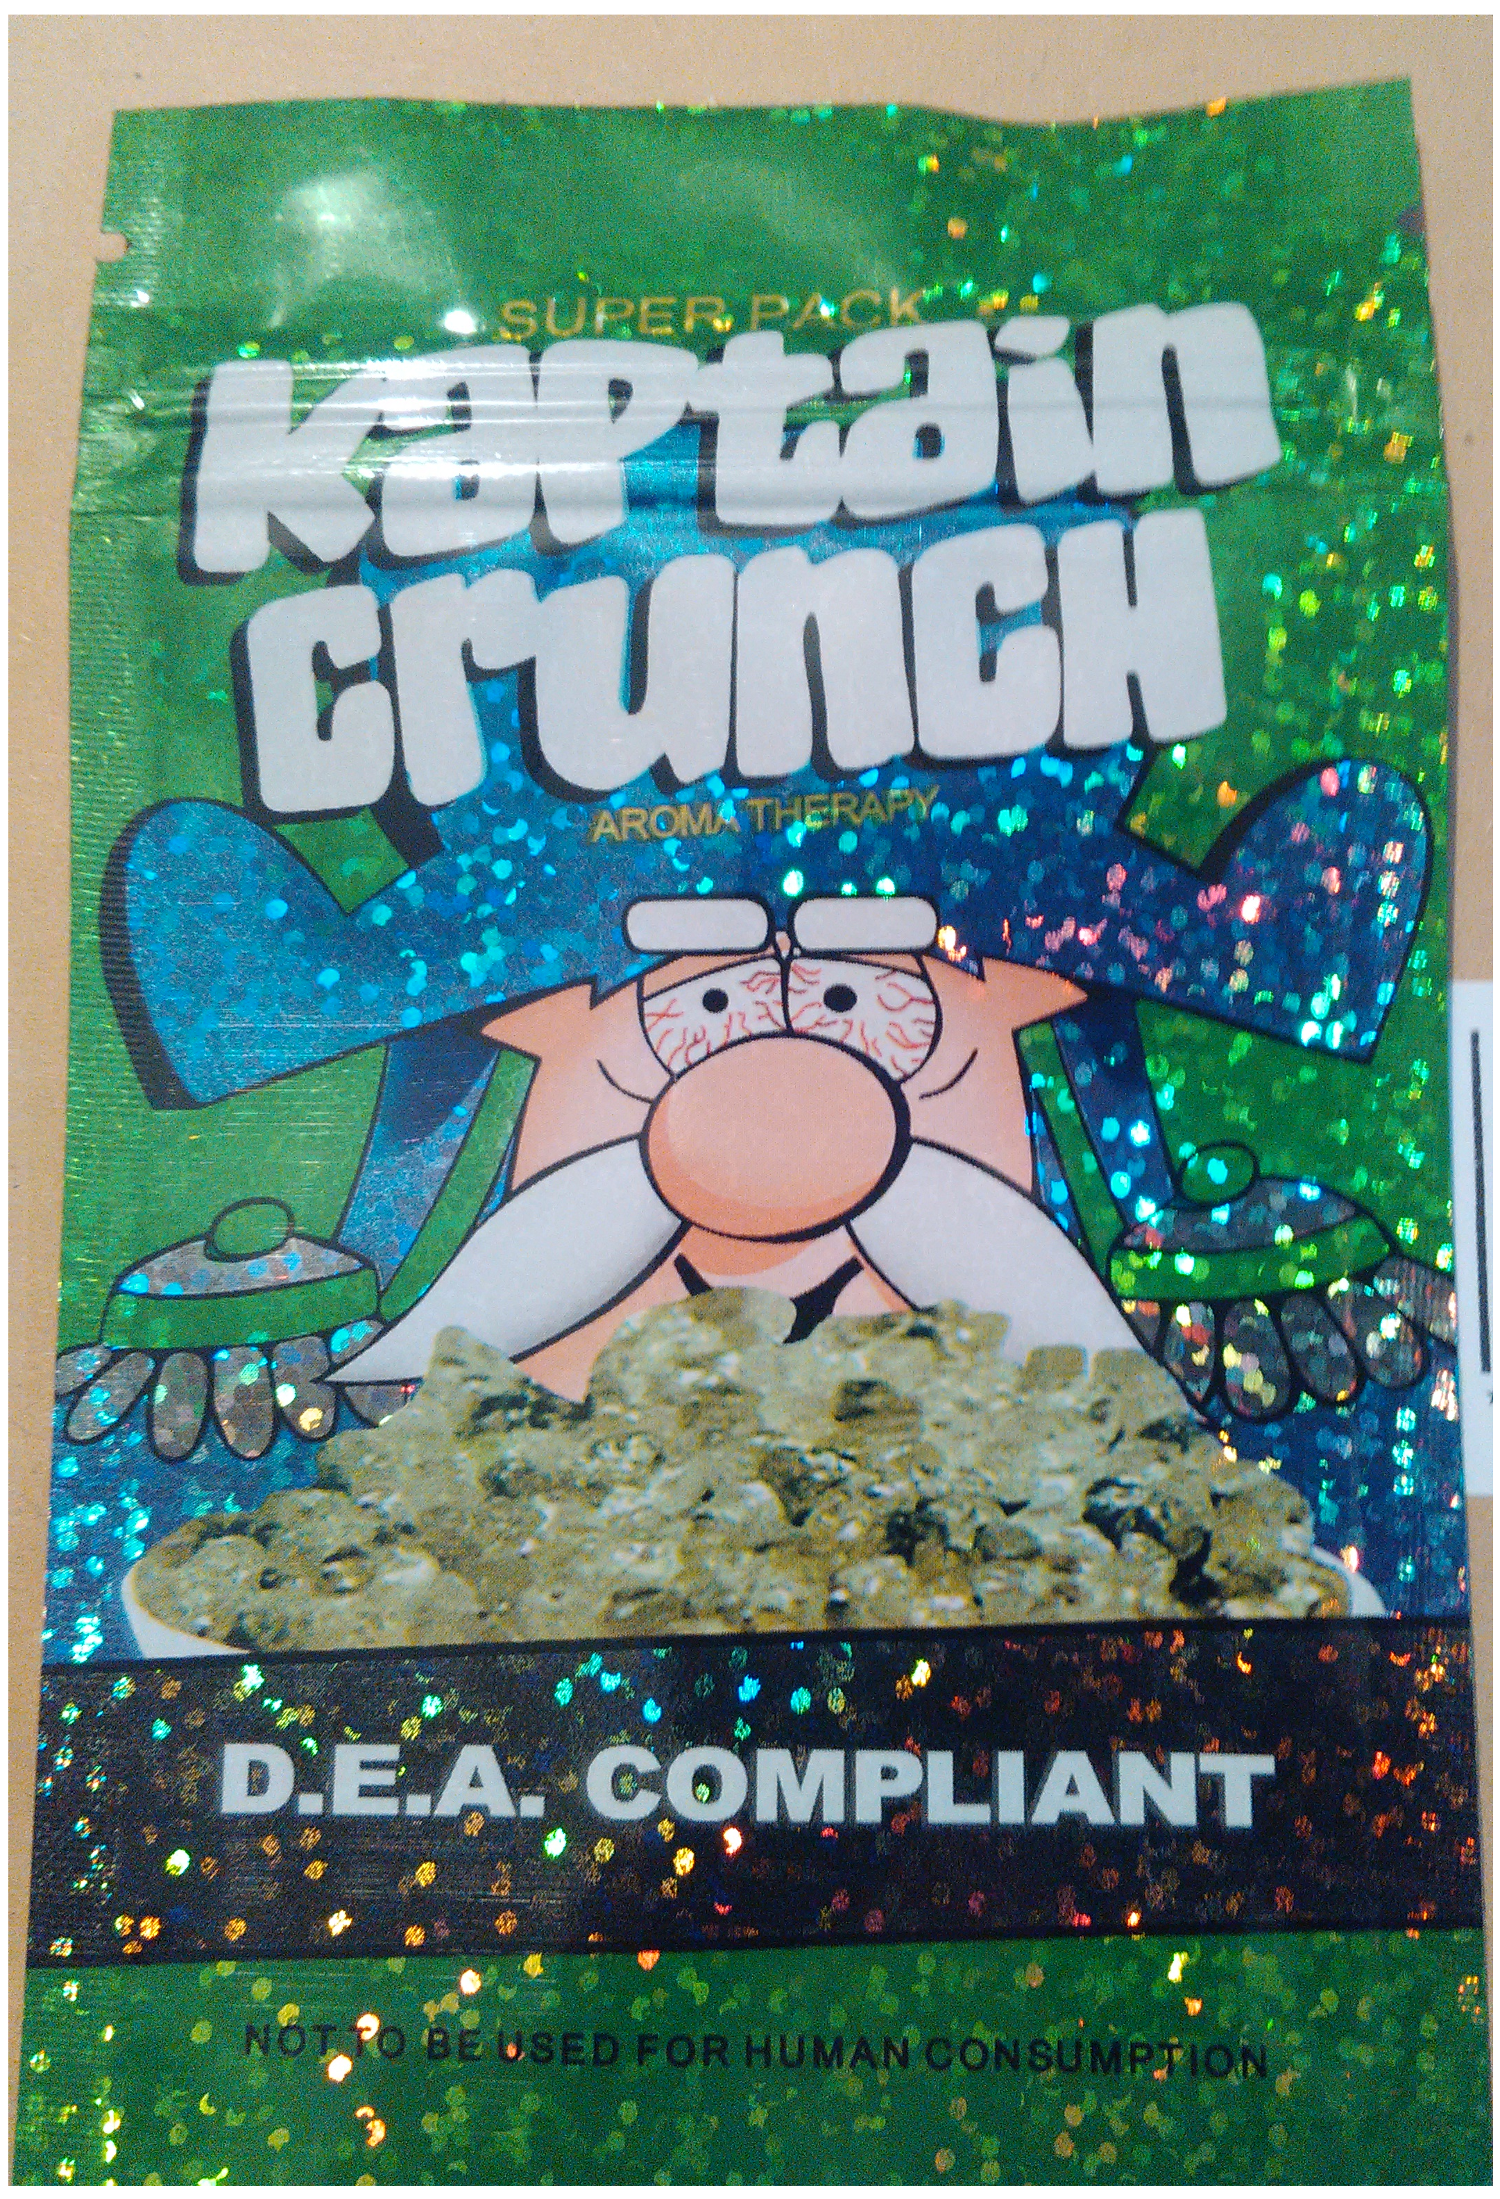 Kaptain Crunch legal high